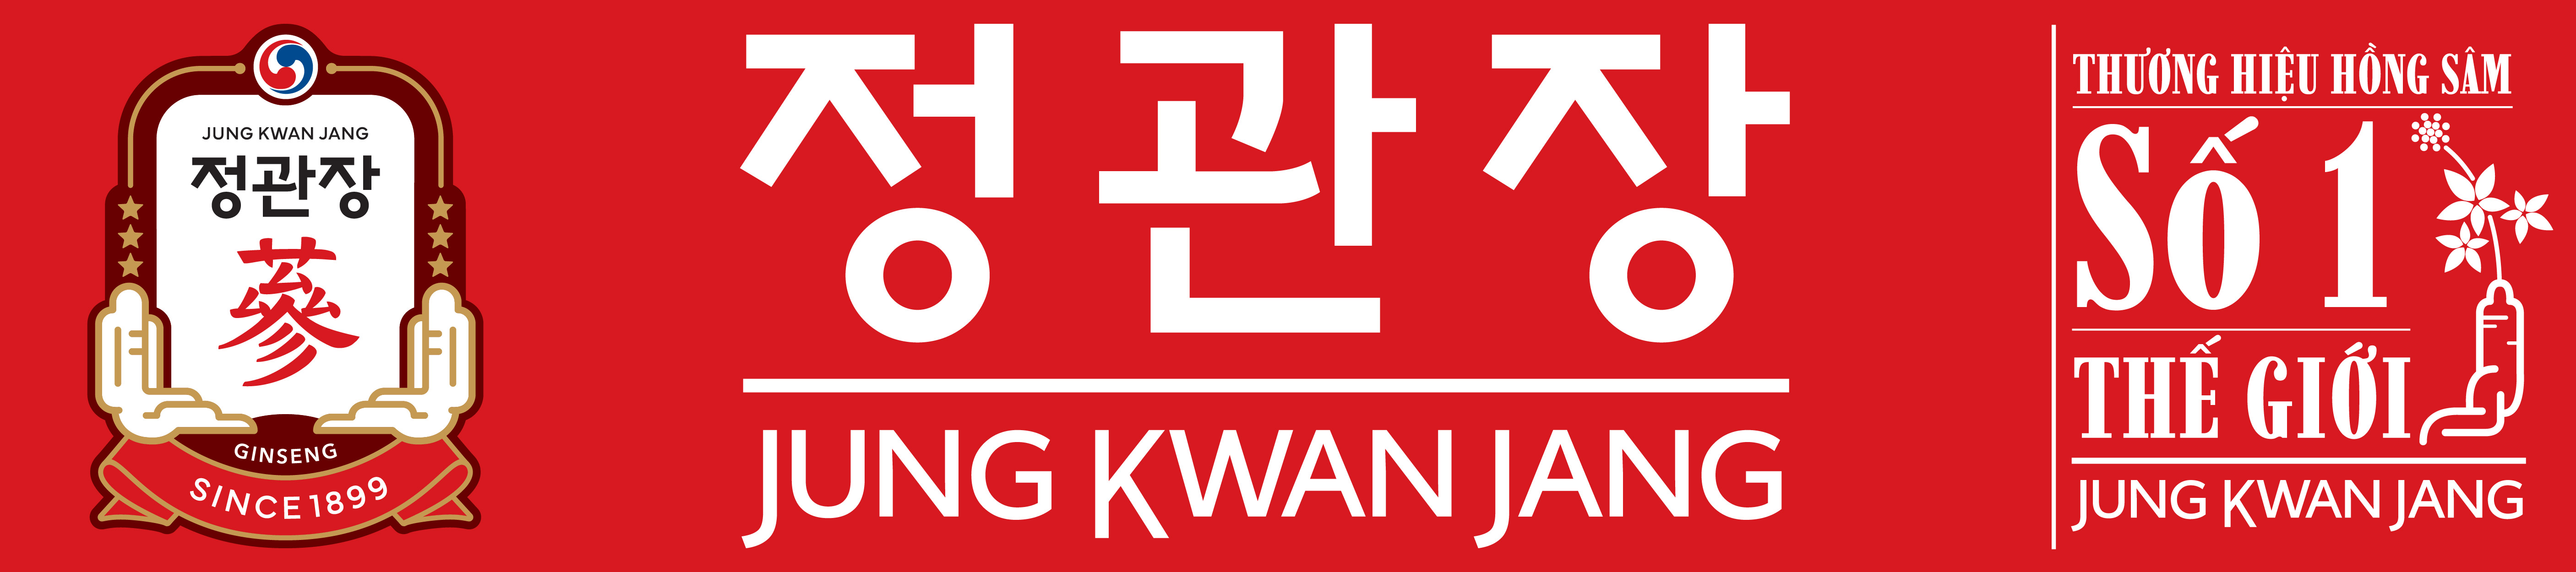 Hồng Sâm Củ Khô Hàn Quốc